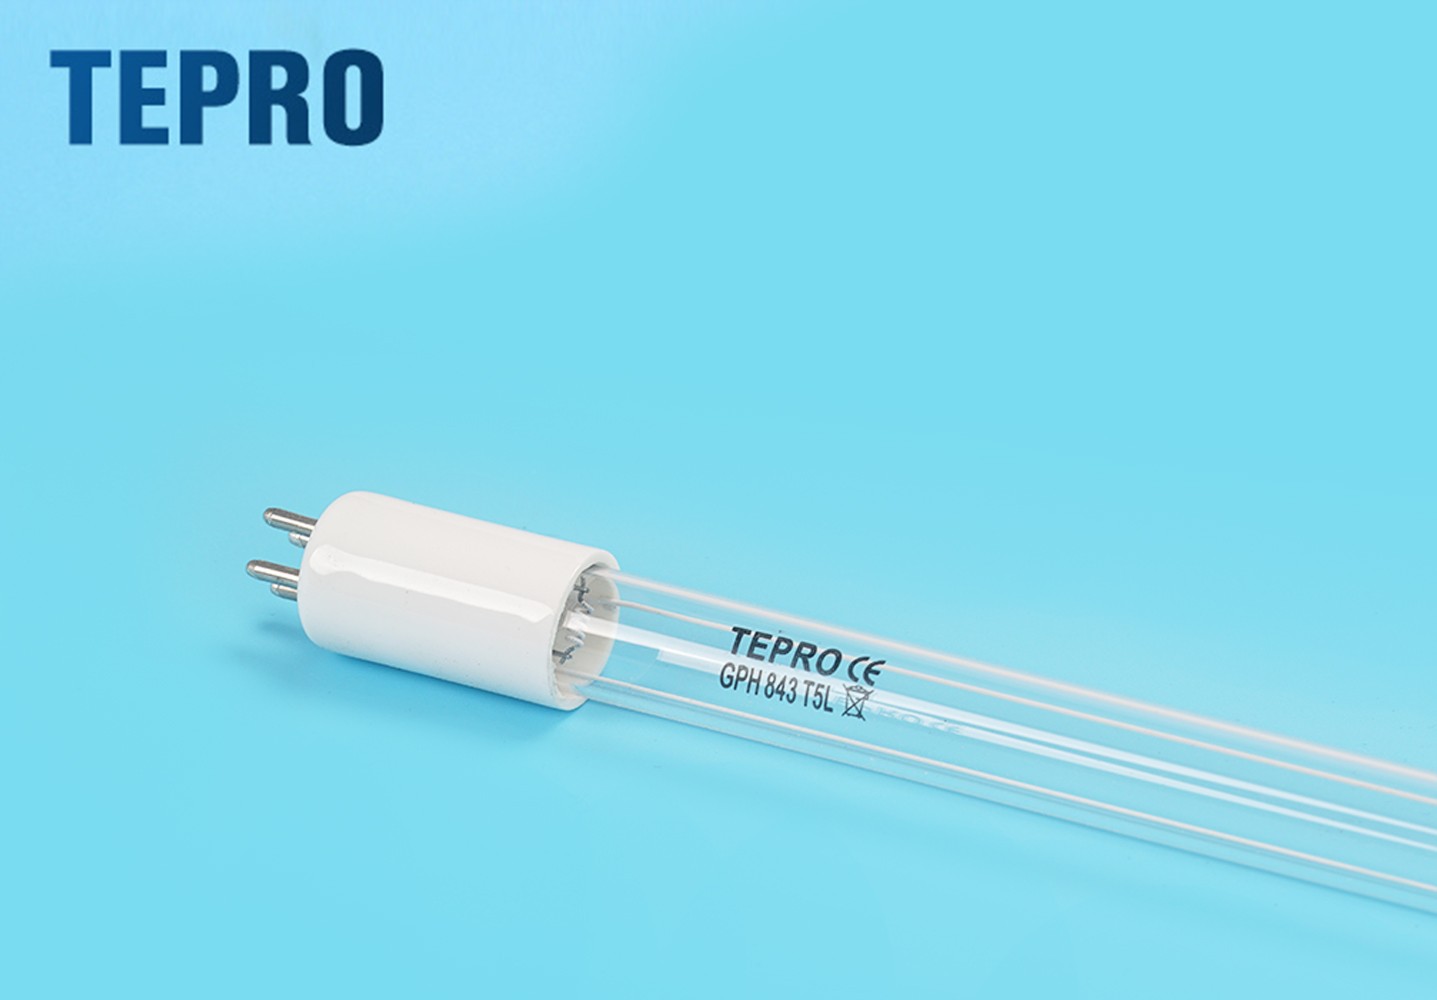 Tepro Top uvc light suppliers for aquarium-1